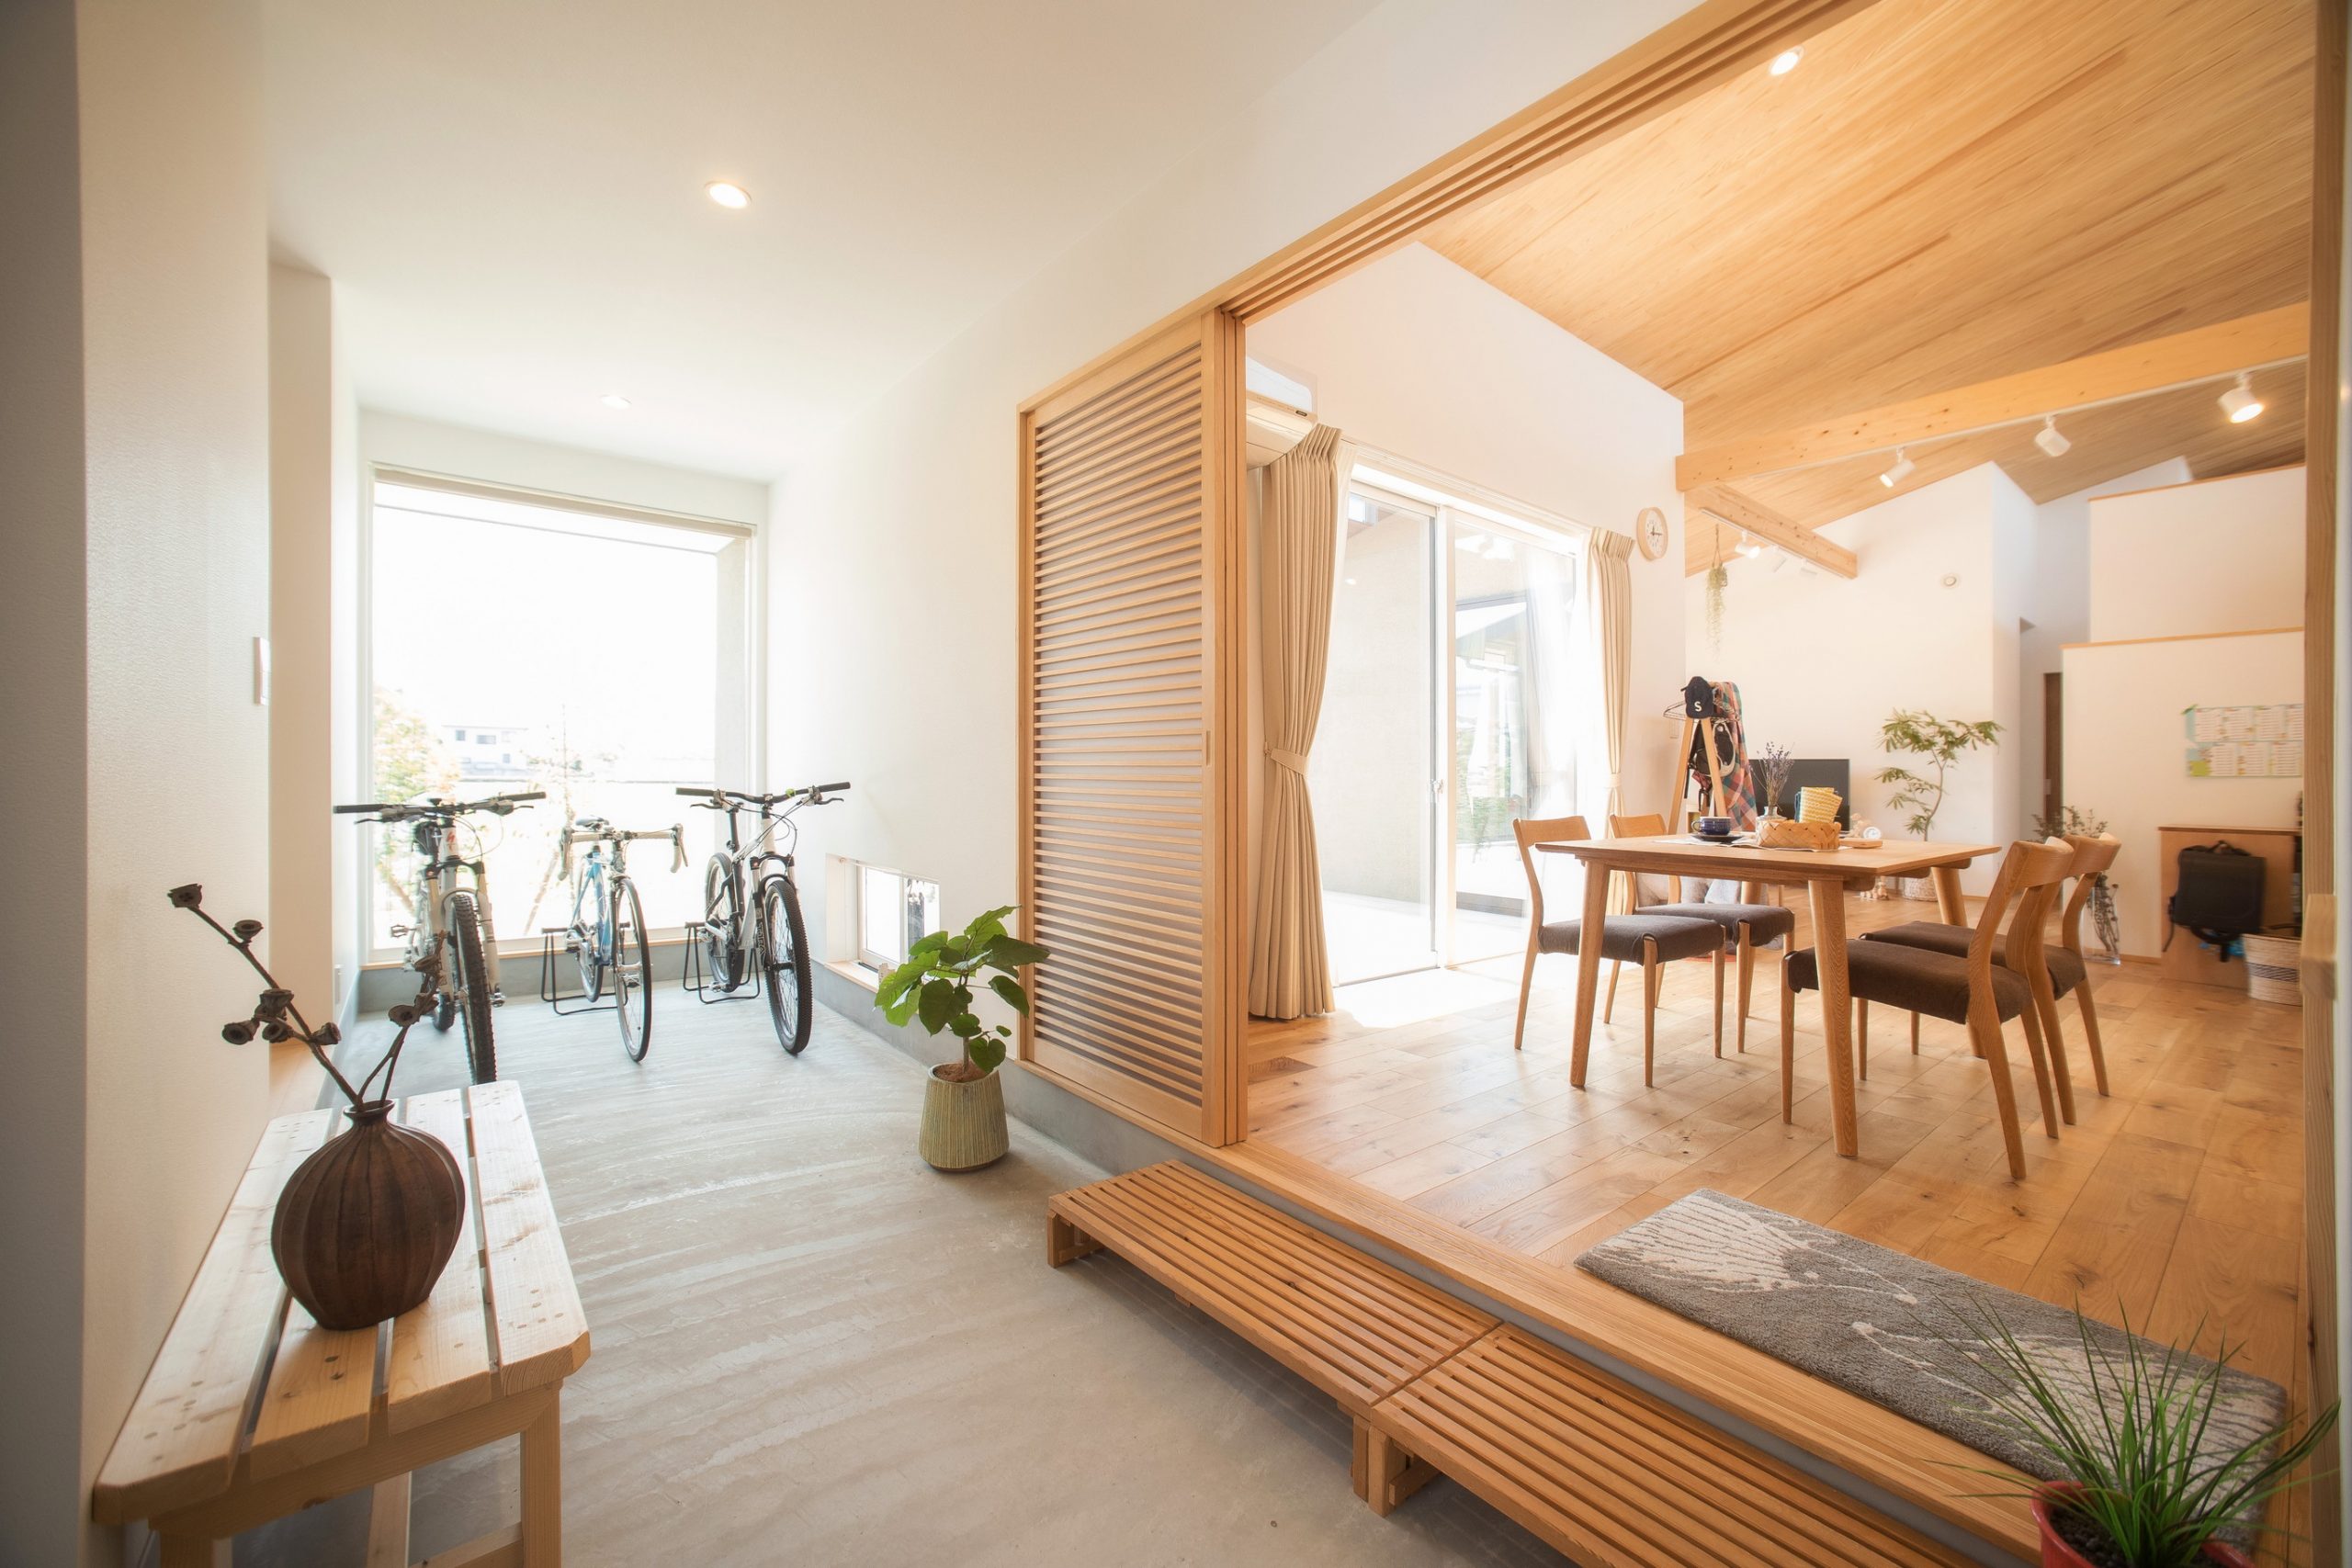 通り土間と離れ和室がある平屋 設計士とつくる素敵な暮らし 長崎材木店一級建築士事務所